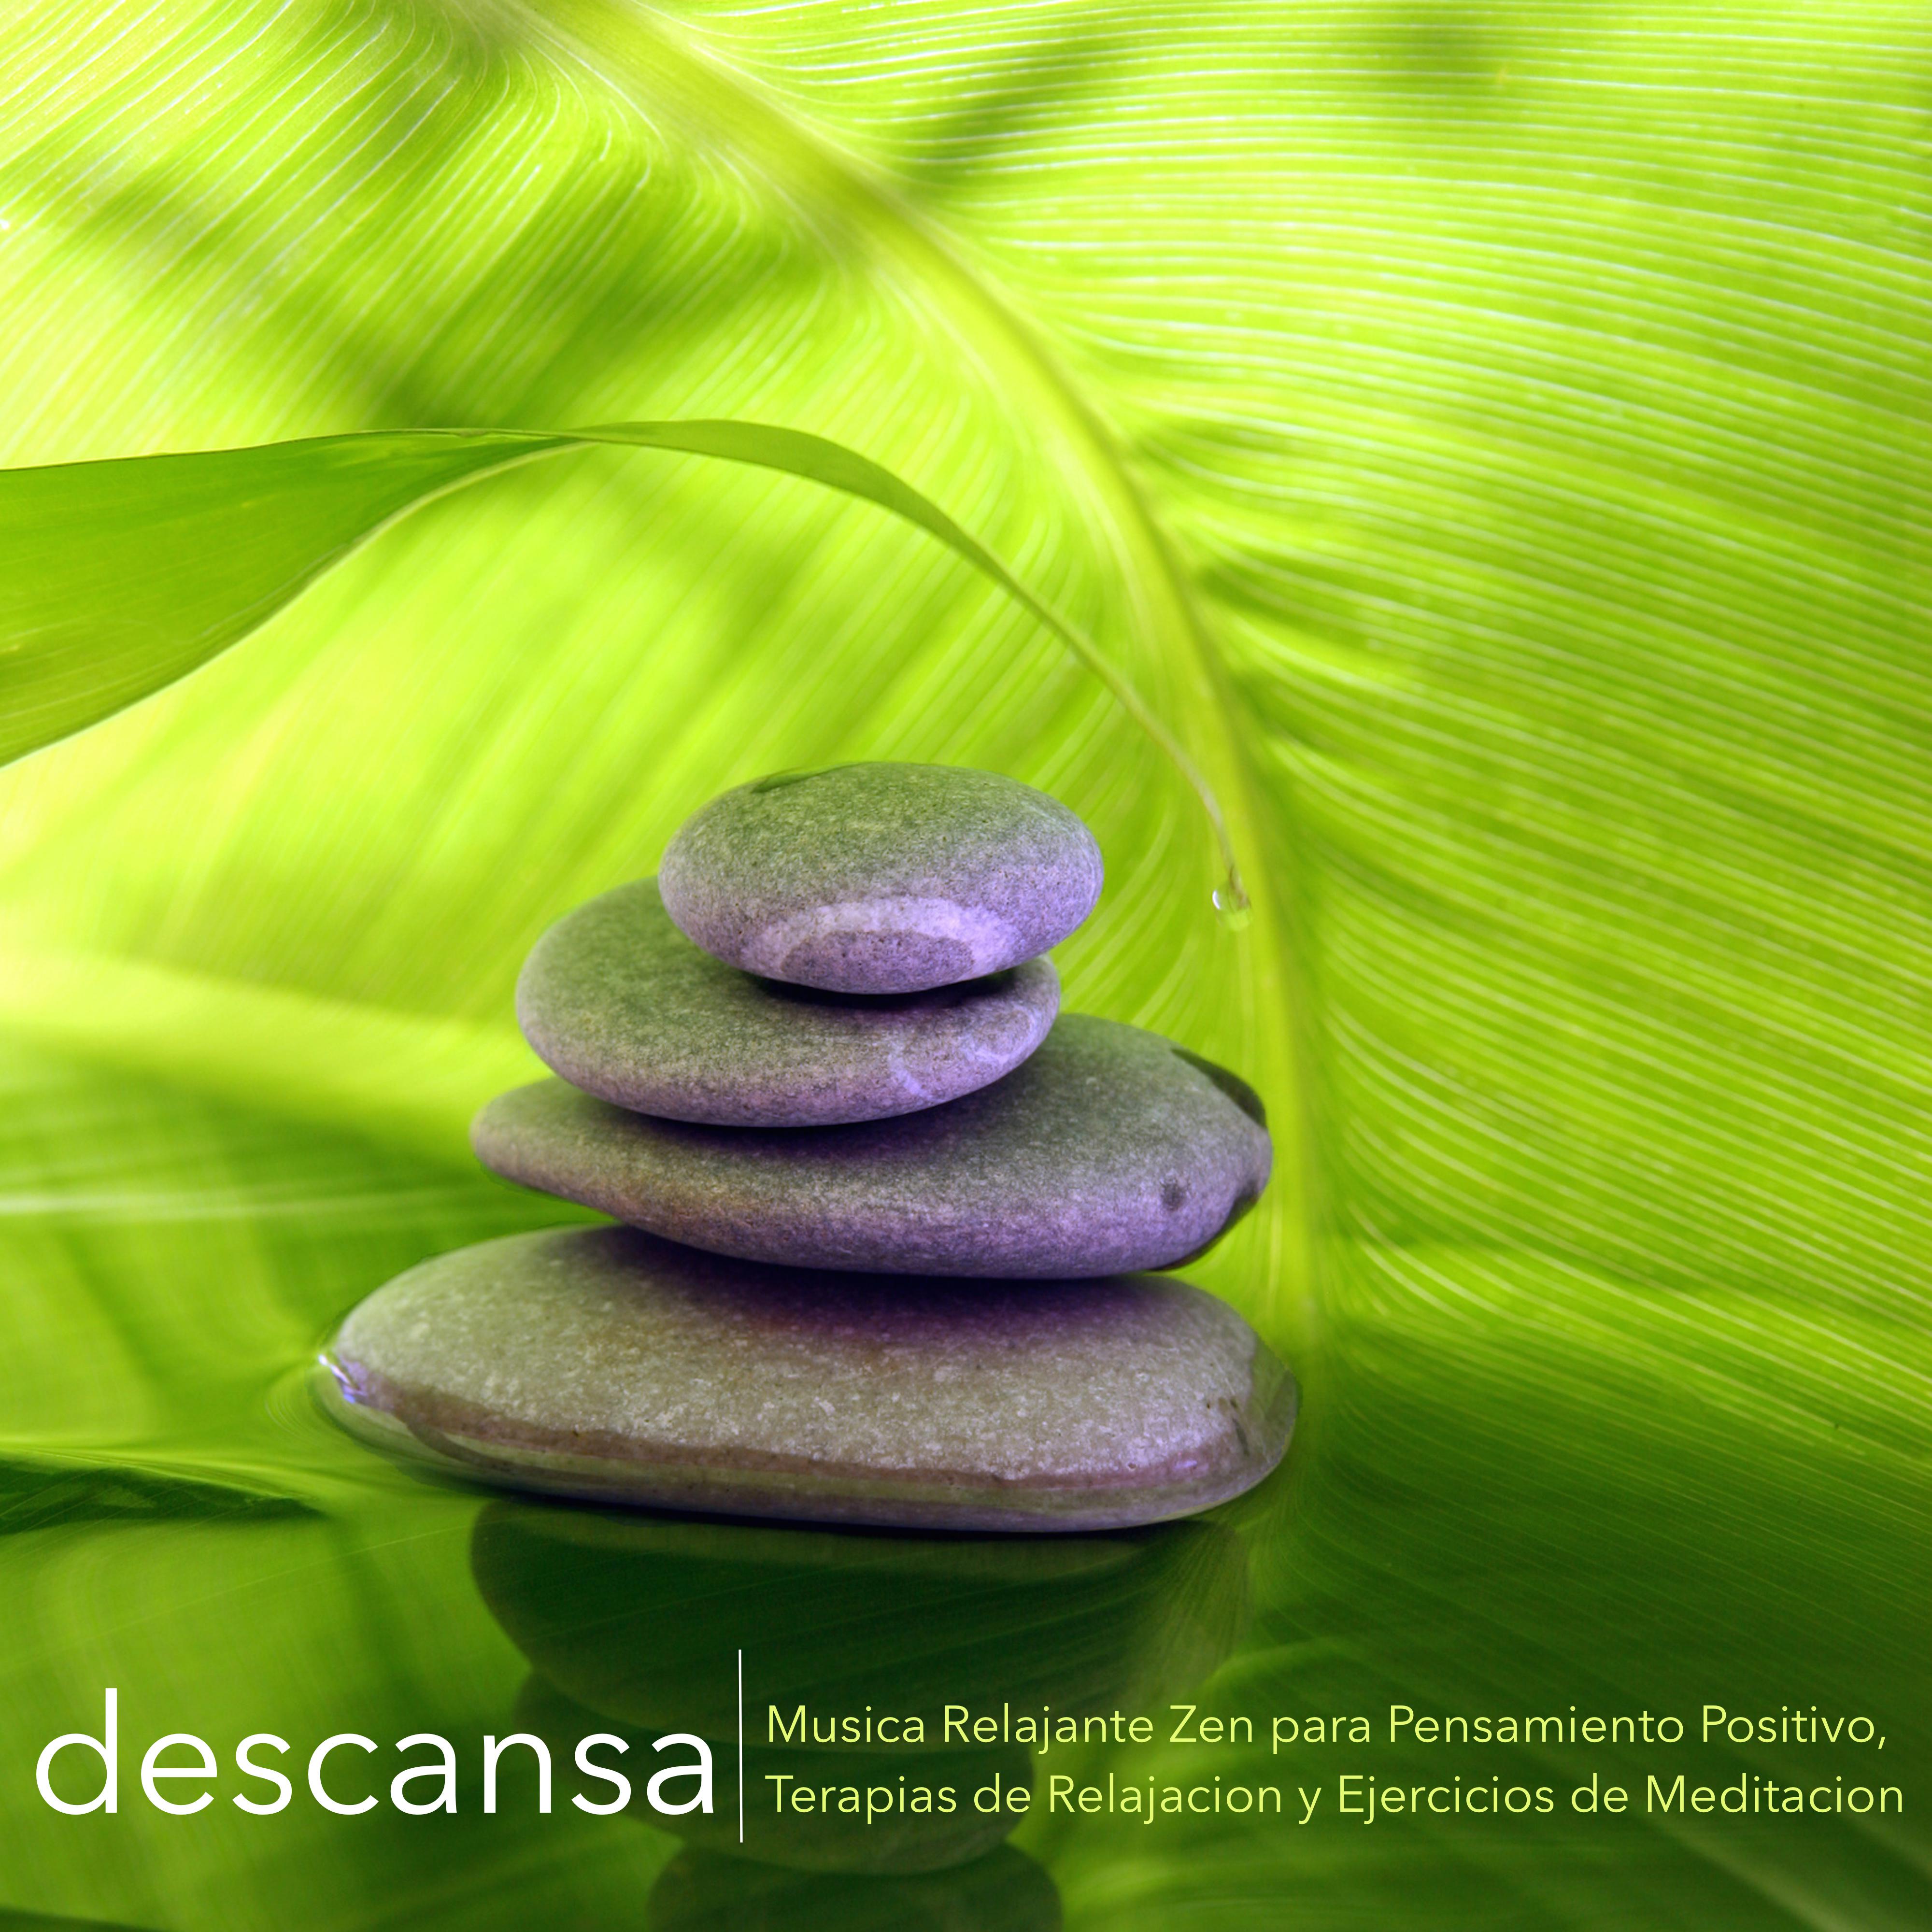 Descansa - Musica Relajante Zen para Pensamiento Positivo, Terapias de Relajacion y Ejercicios de Meditacion